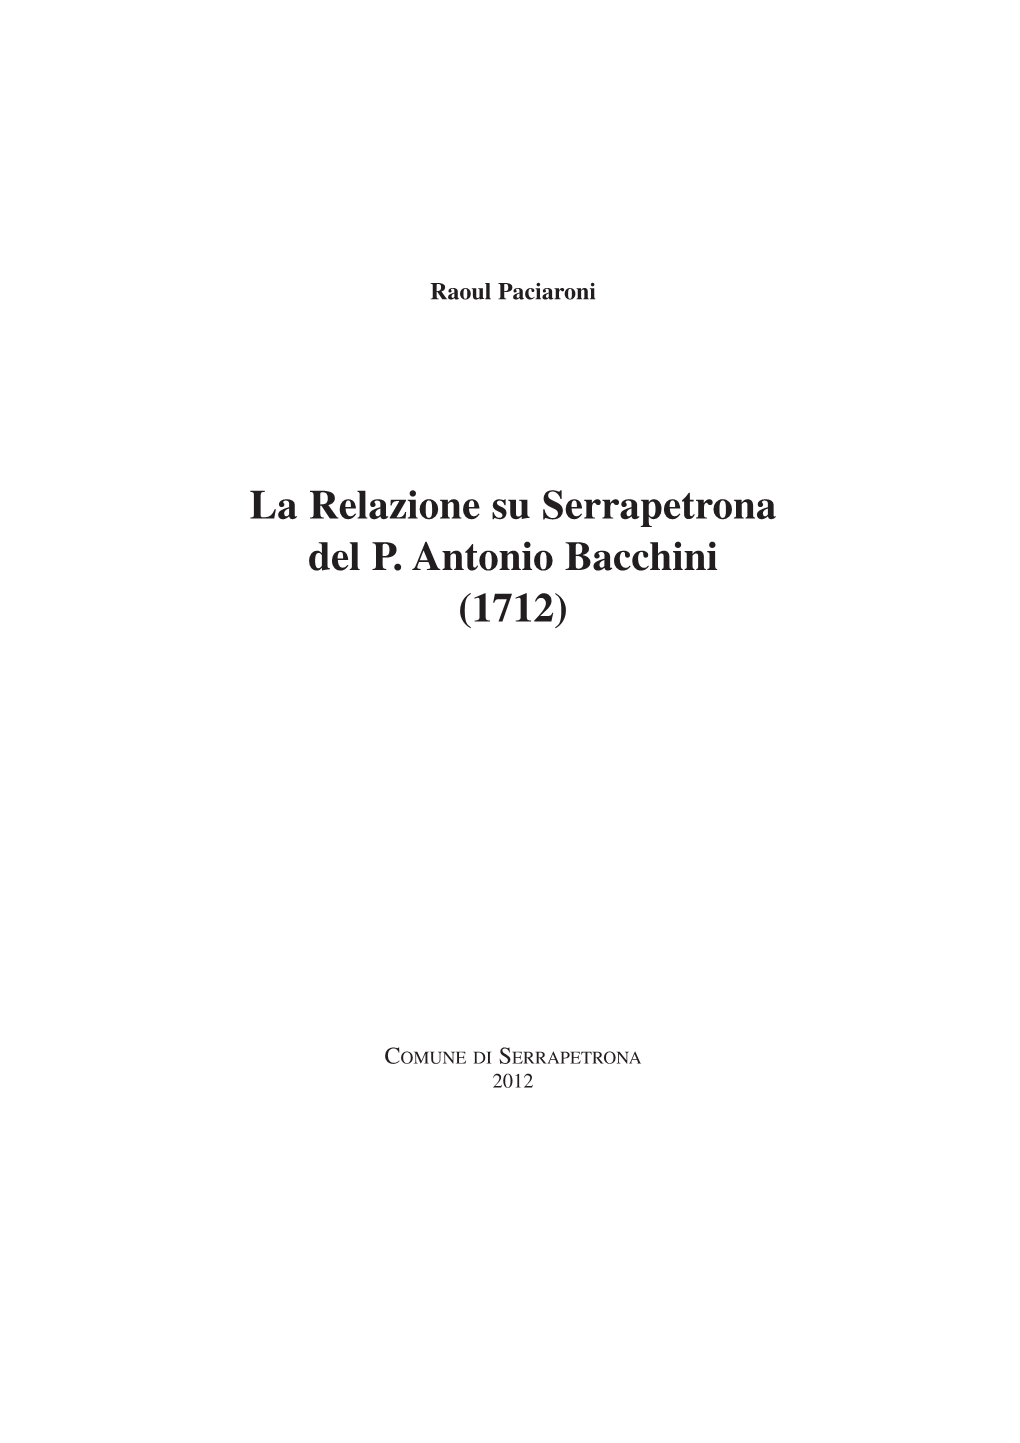 La Relazione Su Serrapetrona Del P. Antonio Bacchini (1712)